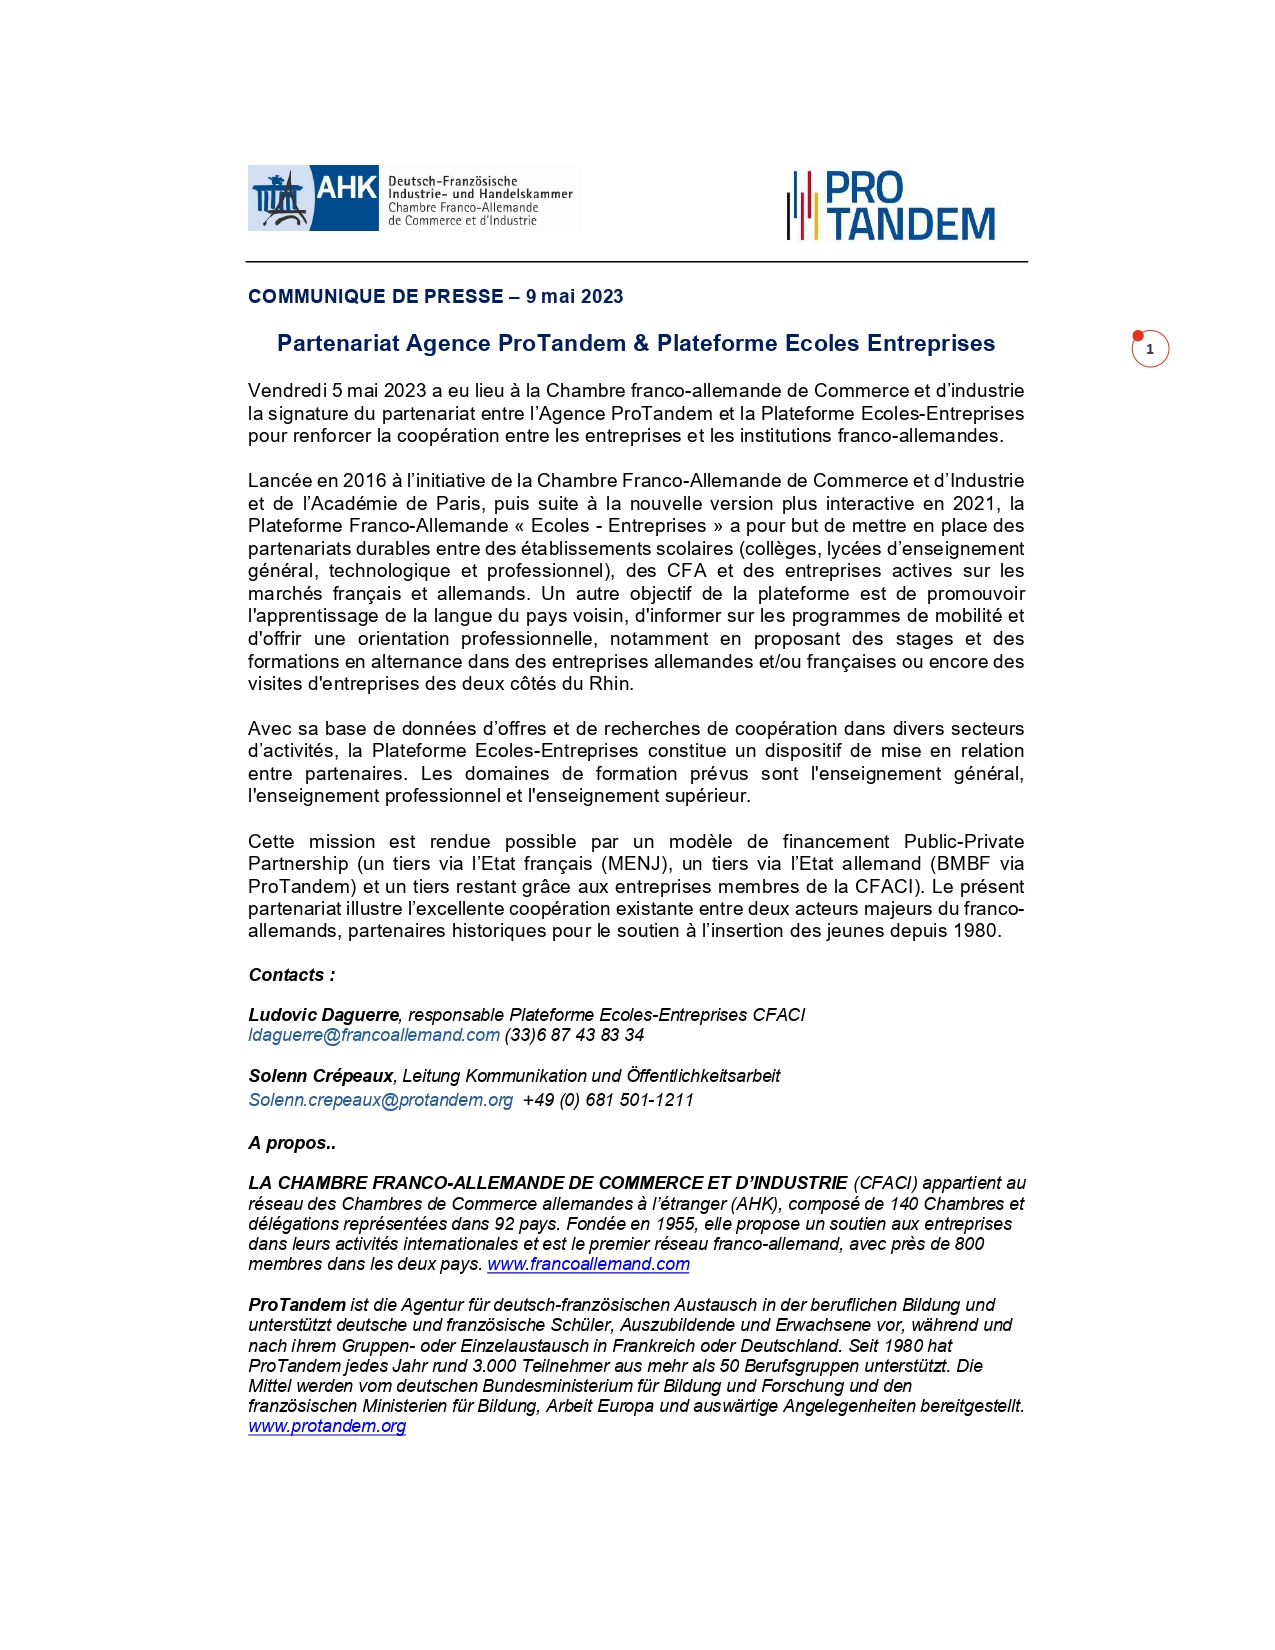 Partenariat Agence ProTandem & Plateforme Ecoles Entreprises